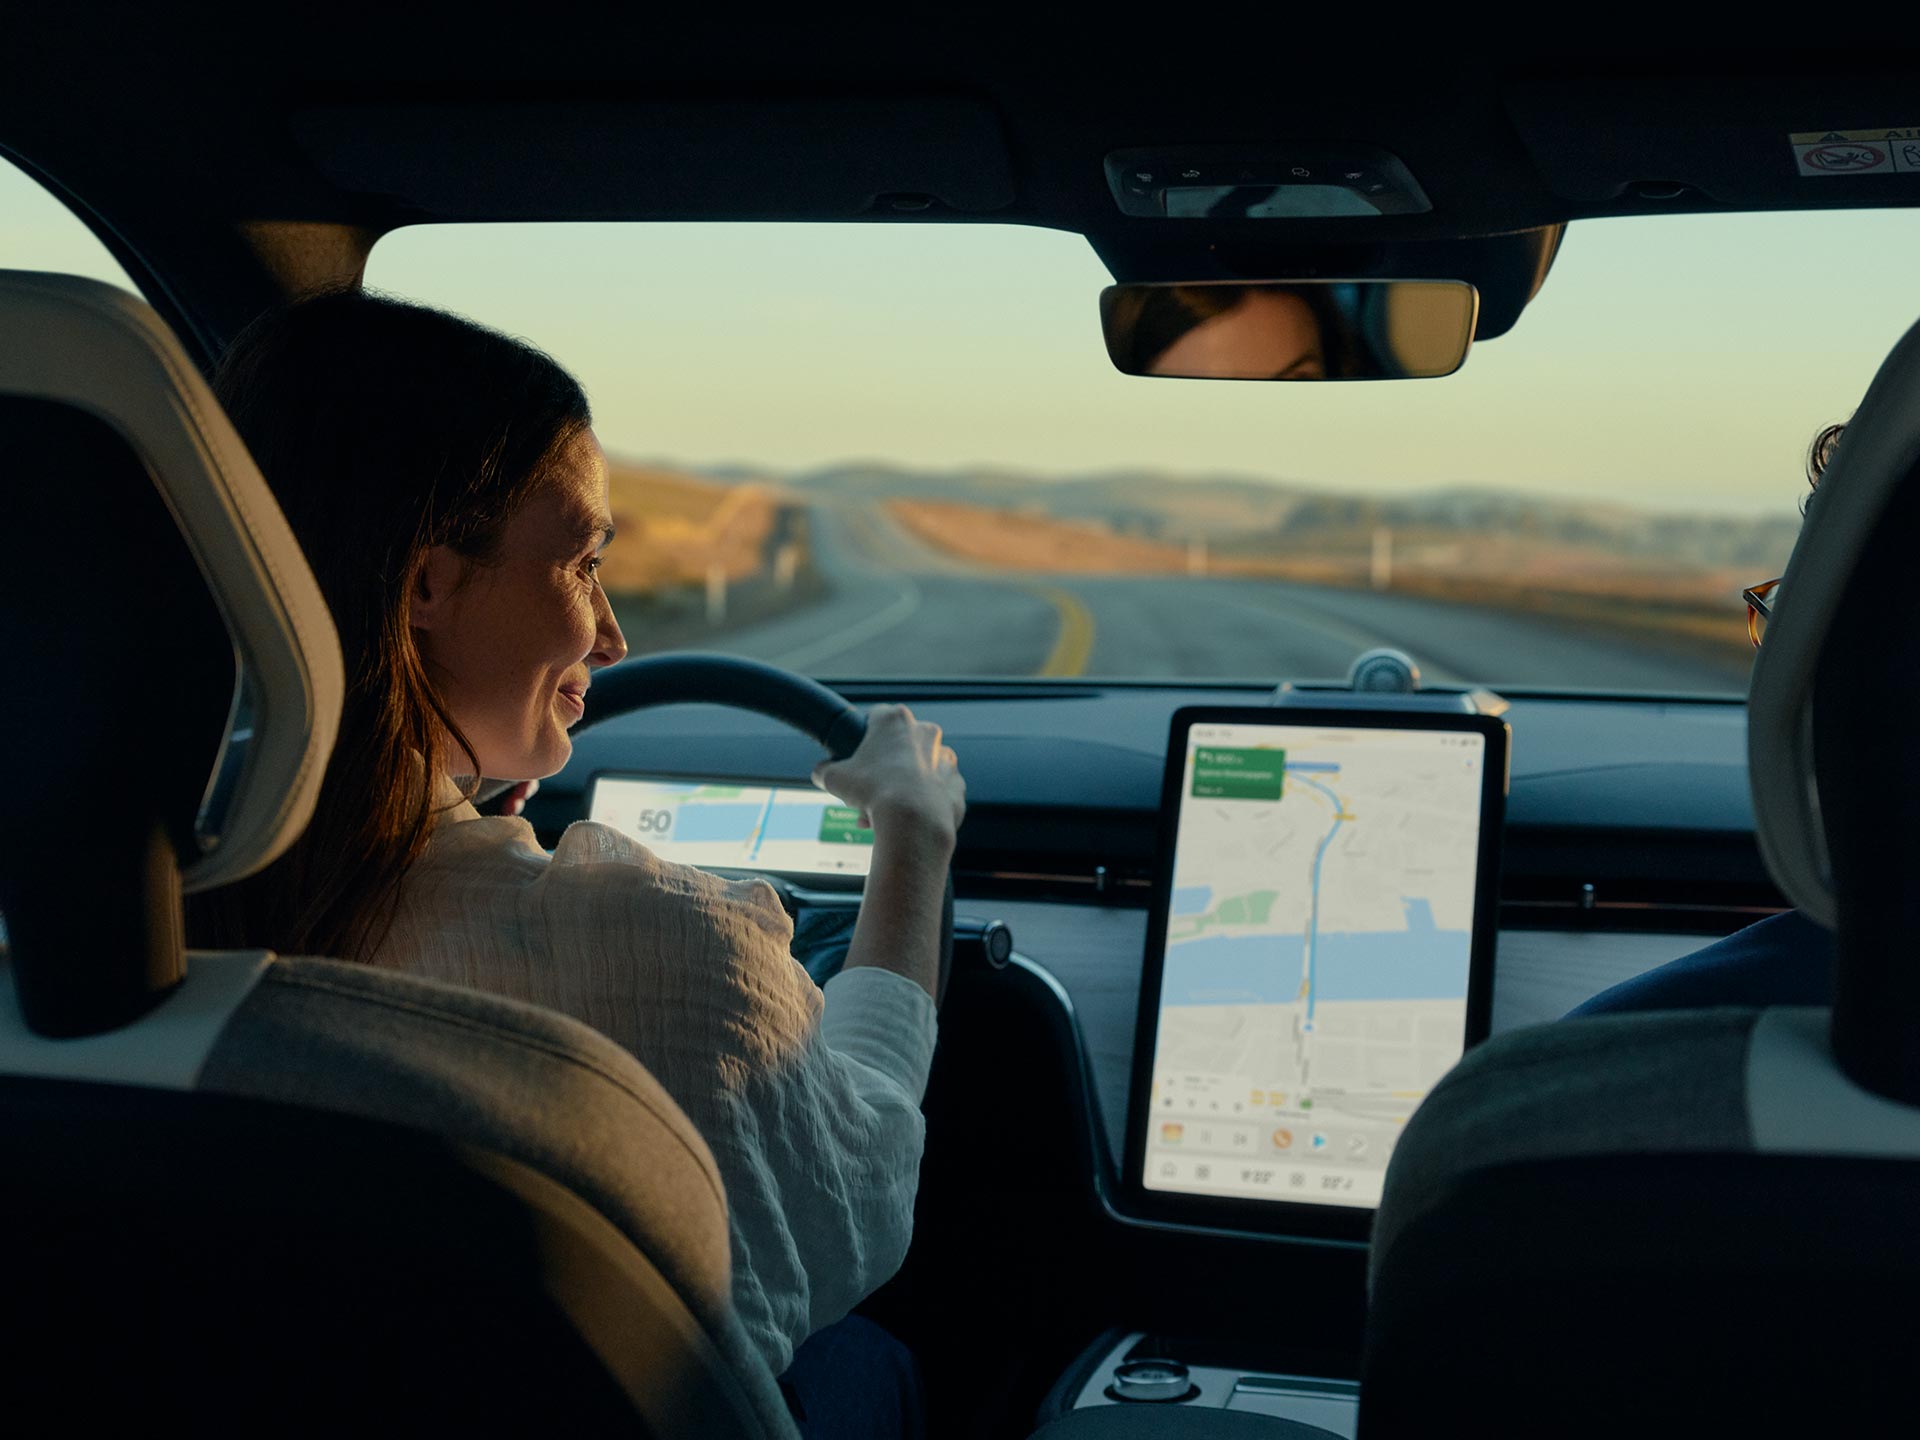 Gledano iz ugla putnika na zadnjoj klupi, žena se smeši dok gleda u veliki, svetao centralni ekran u svom Volvo automobilu.